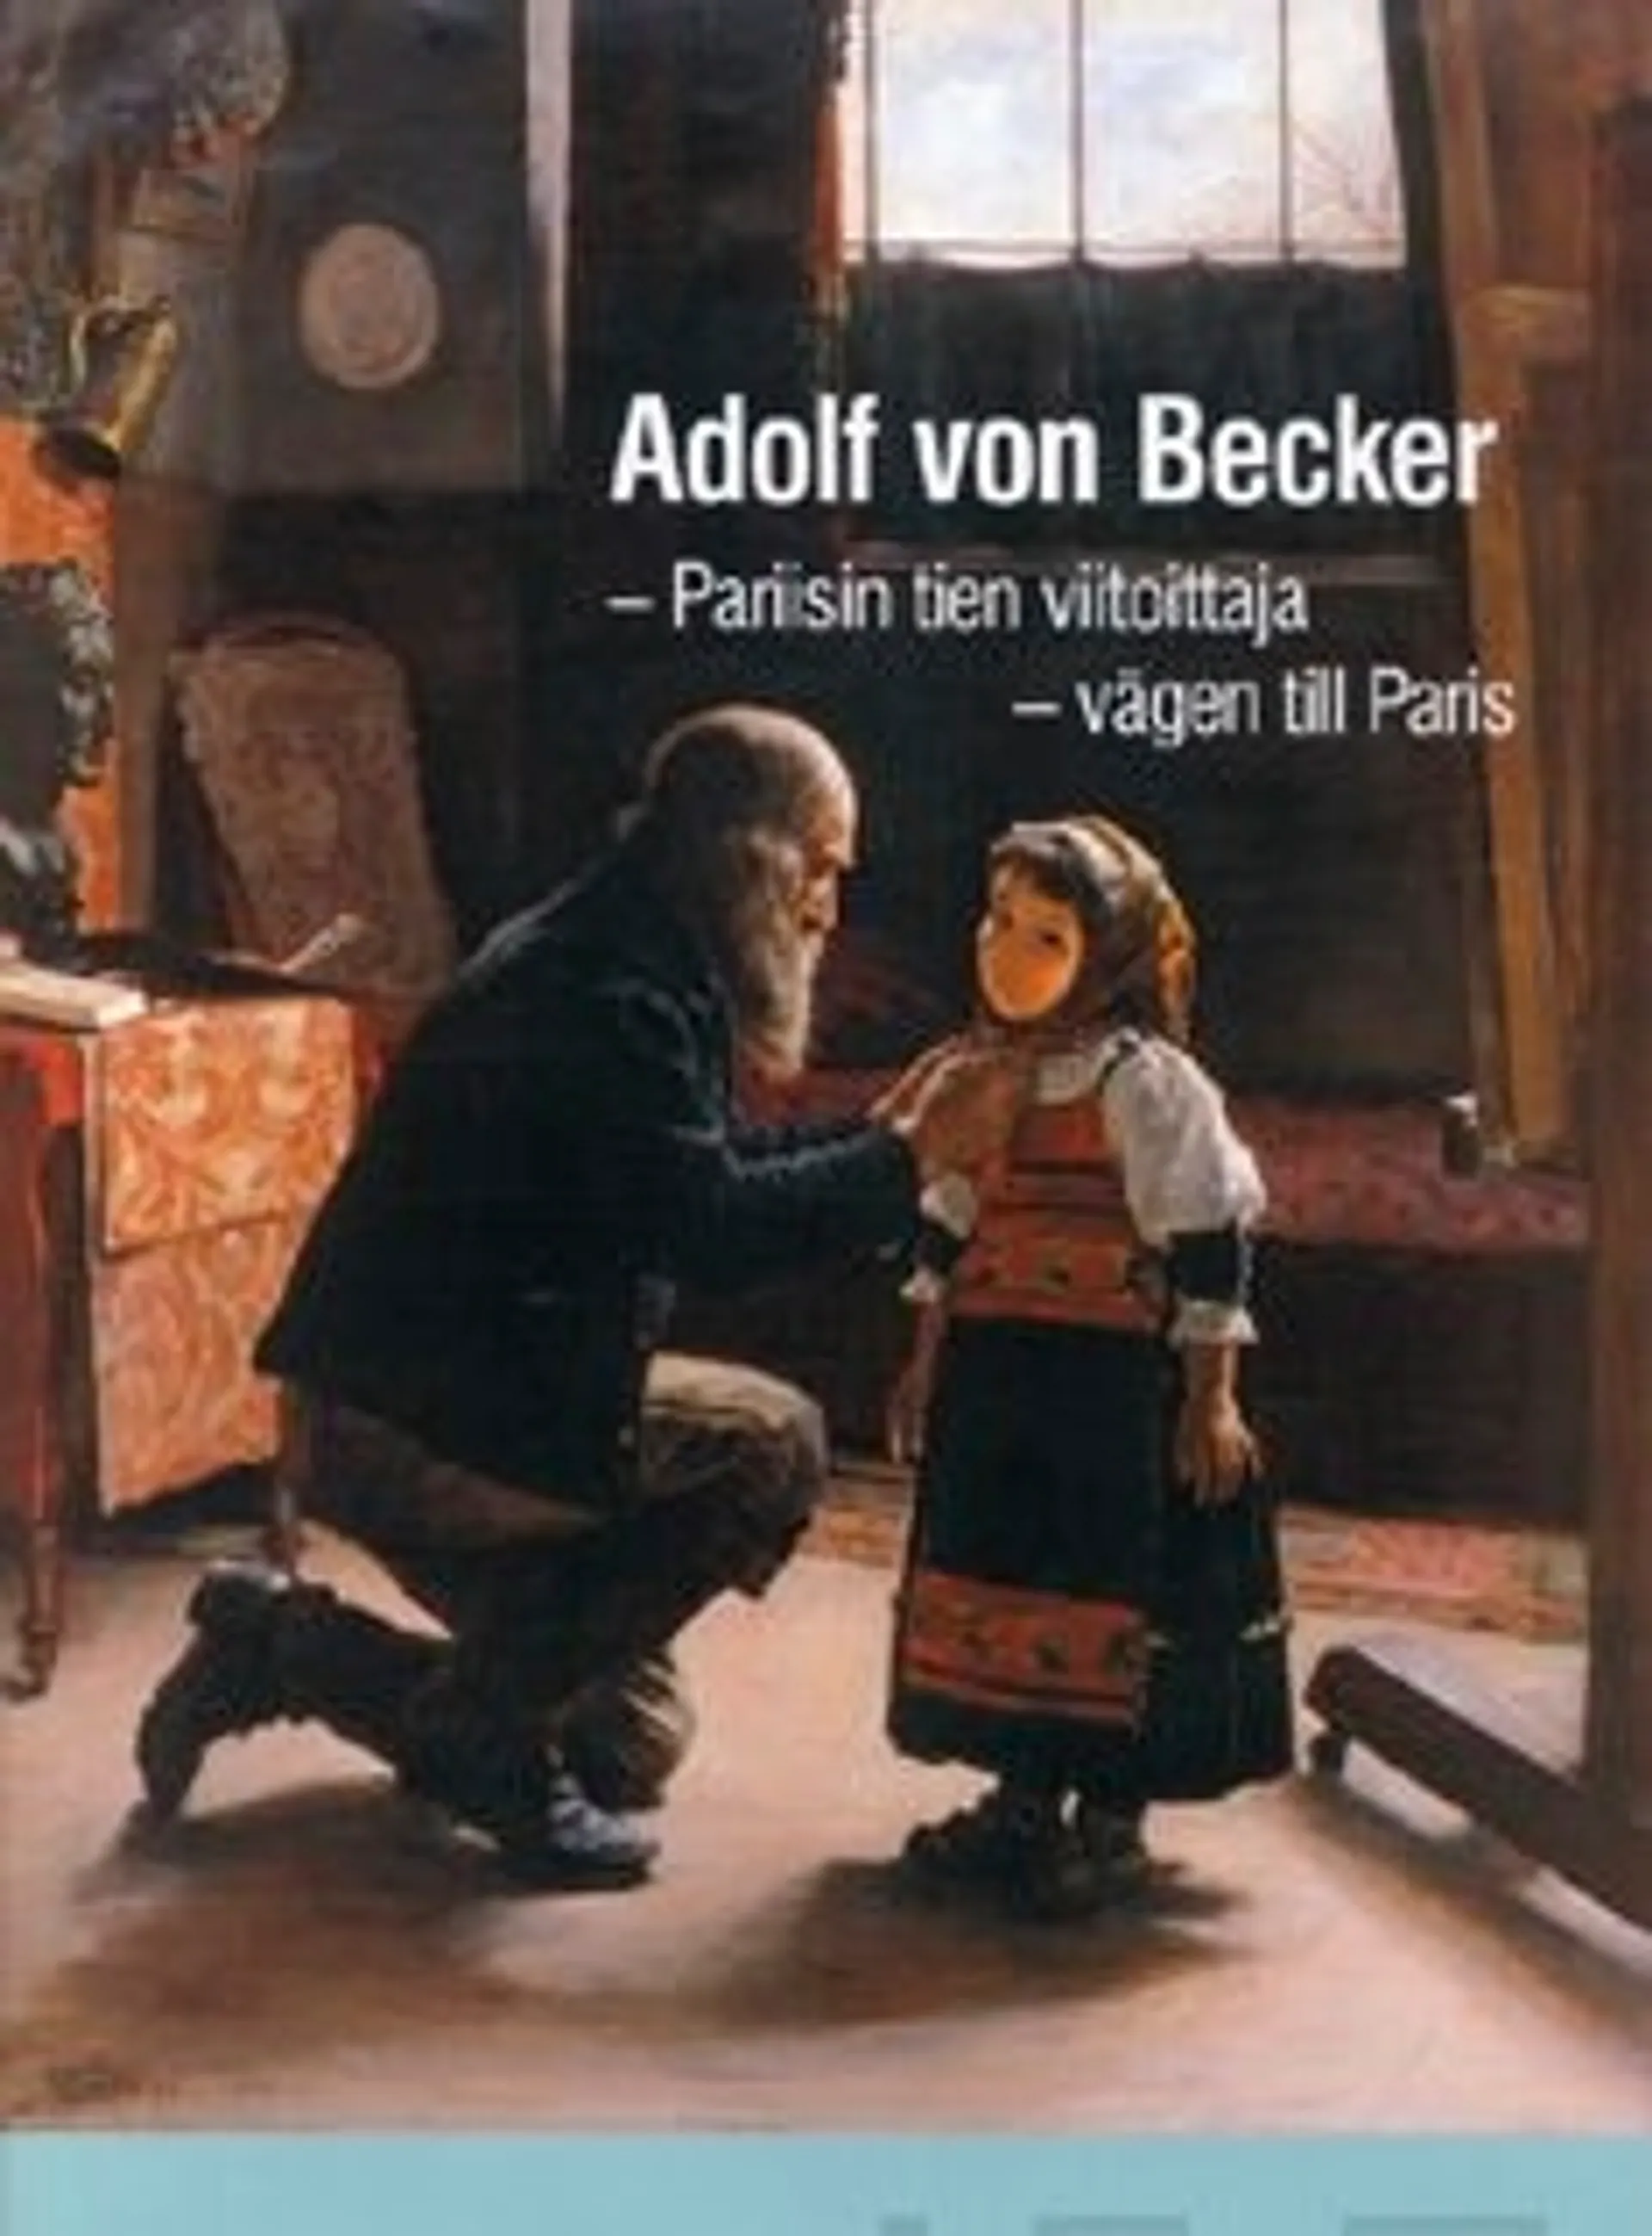 Adolf von Becker - Pariisin tien viitoittaja : vägen till Paris